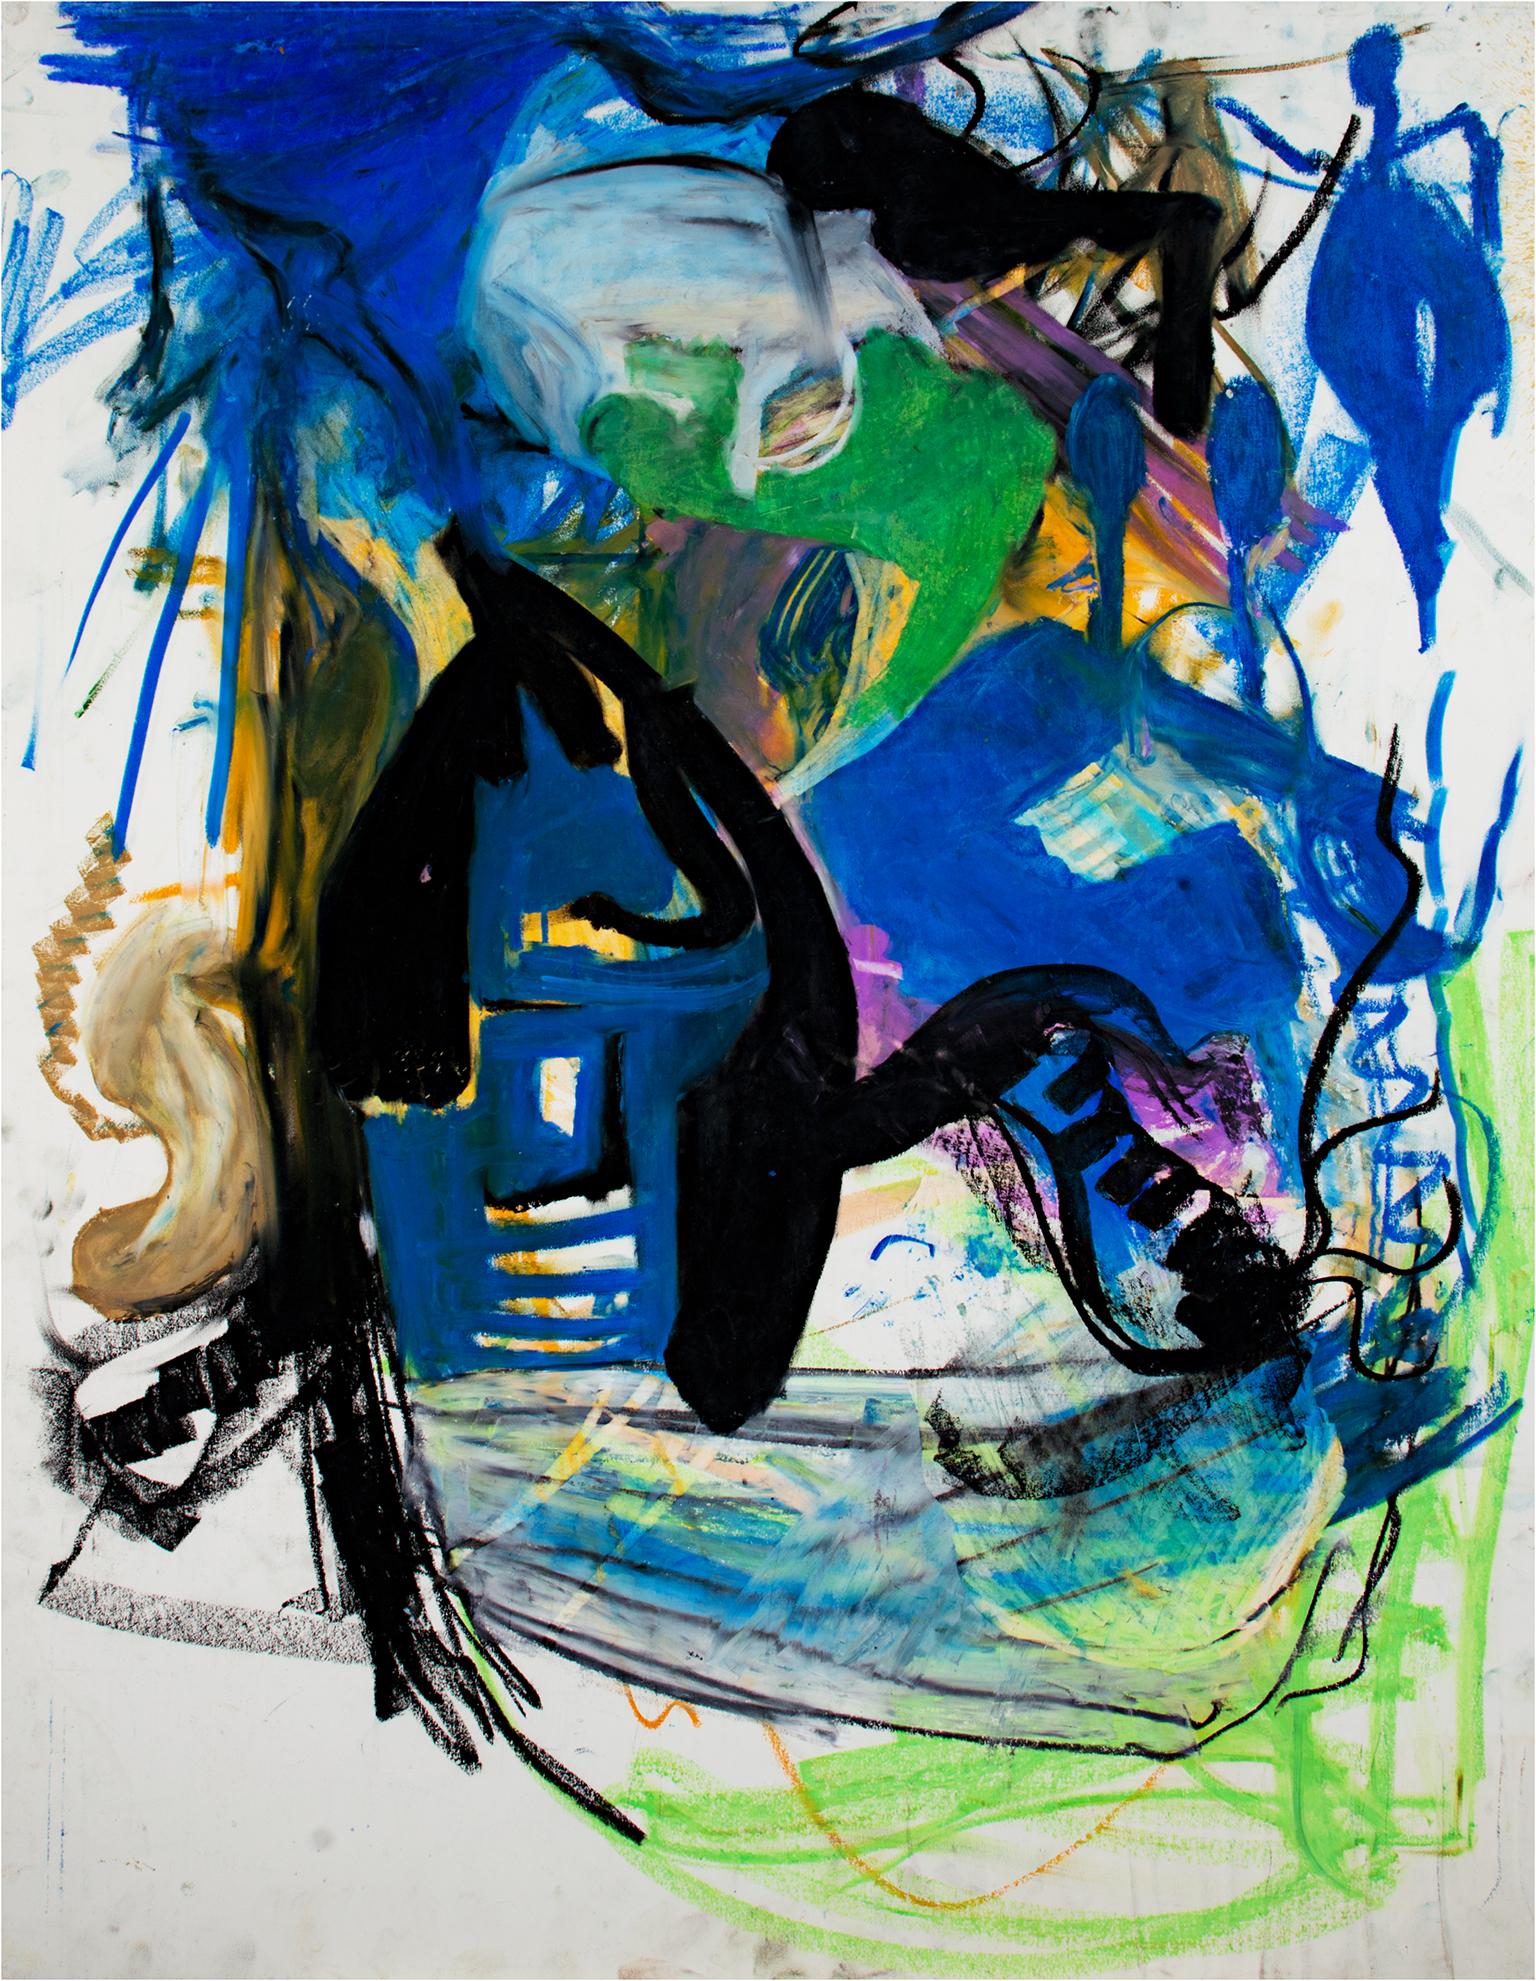 "Ohne Titel" ist eine Original-Ölpastellzeichnung auf Illustrationskarton von Reginald K. Gee. Dieses Werk zeigt abstrakte Zeichen in Blau, Schwarz, Grün und Gelb. 

40" x 30" Kunst
Individuelle Einrahmung ist möglich

Der zeitgenössische